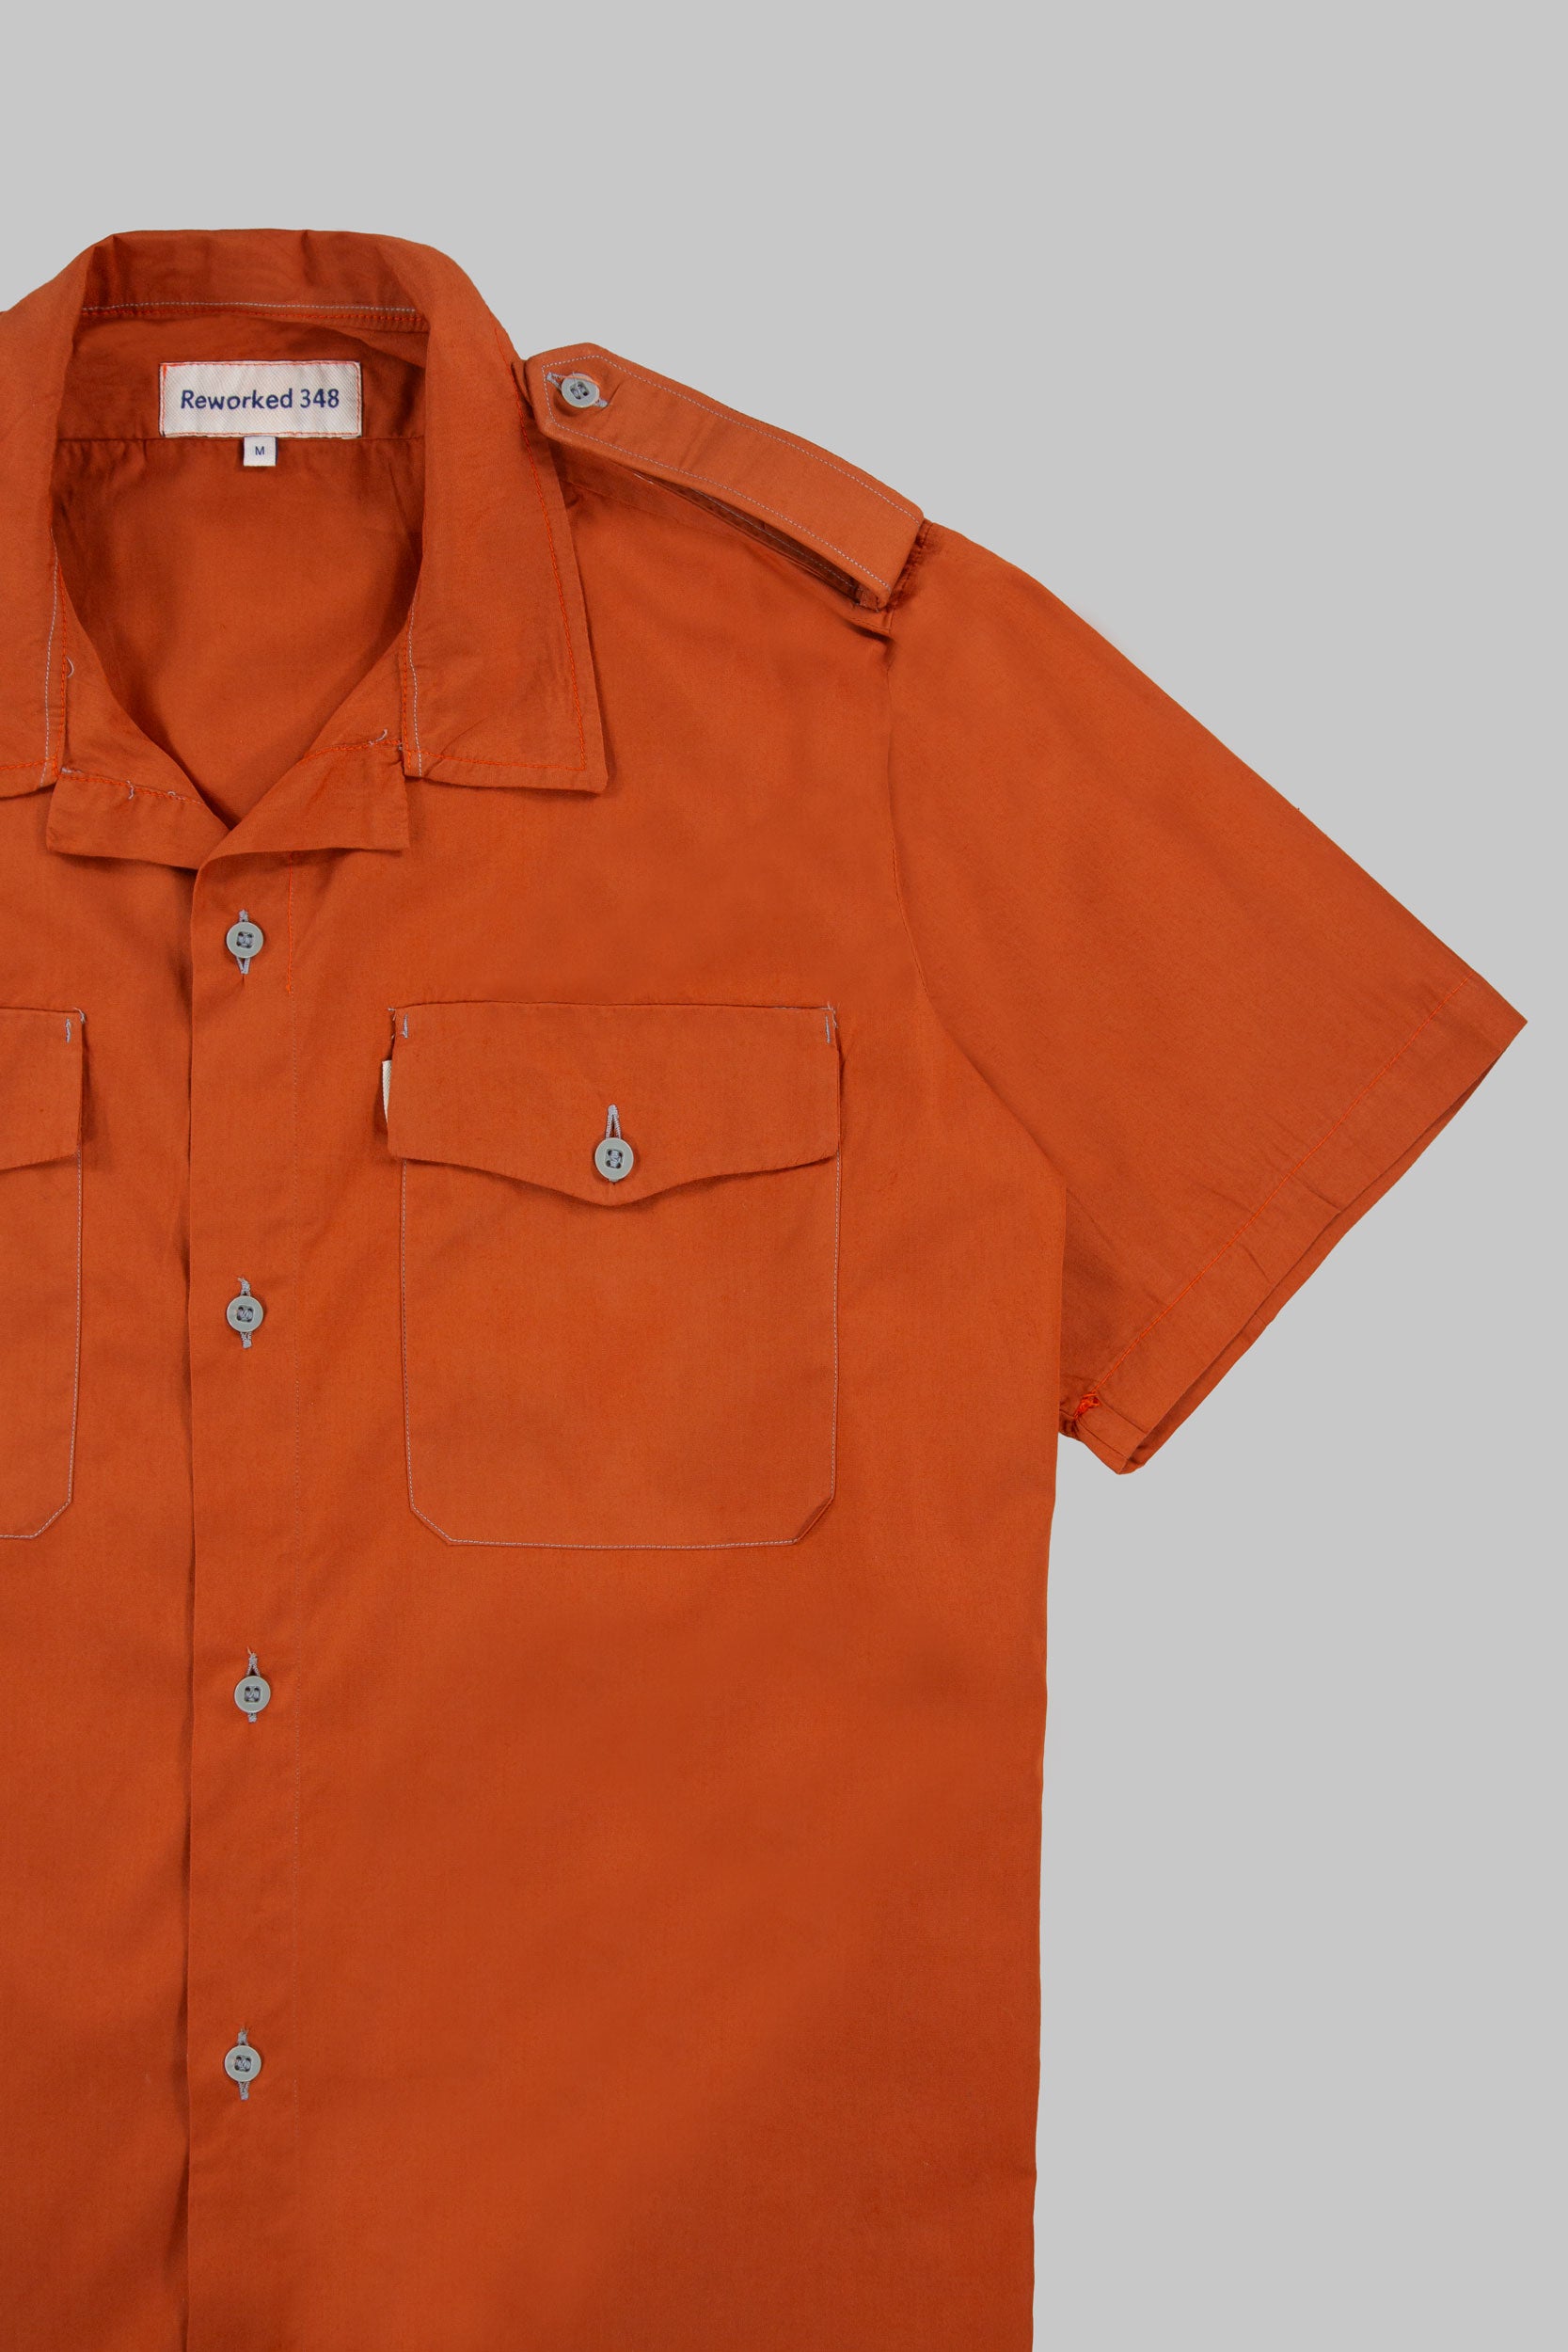 Tripps Shirt Mute Orange